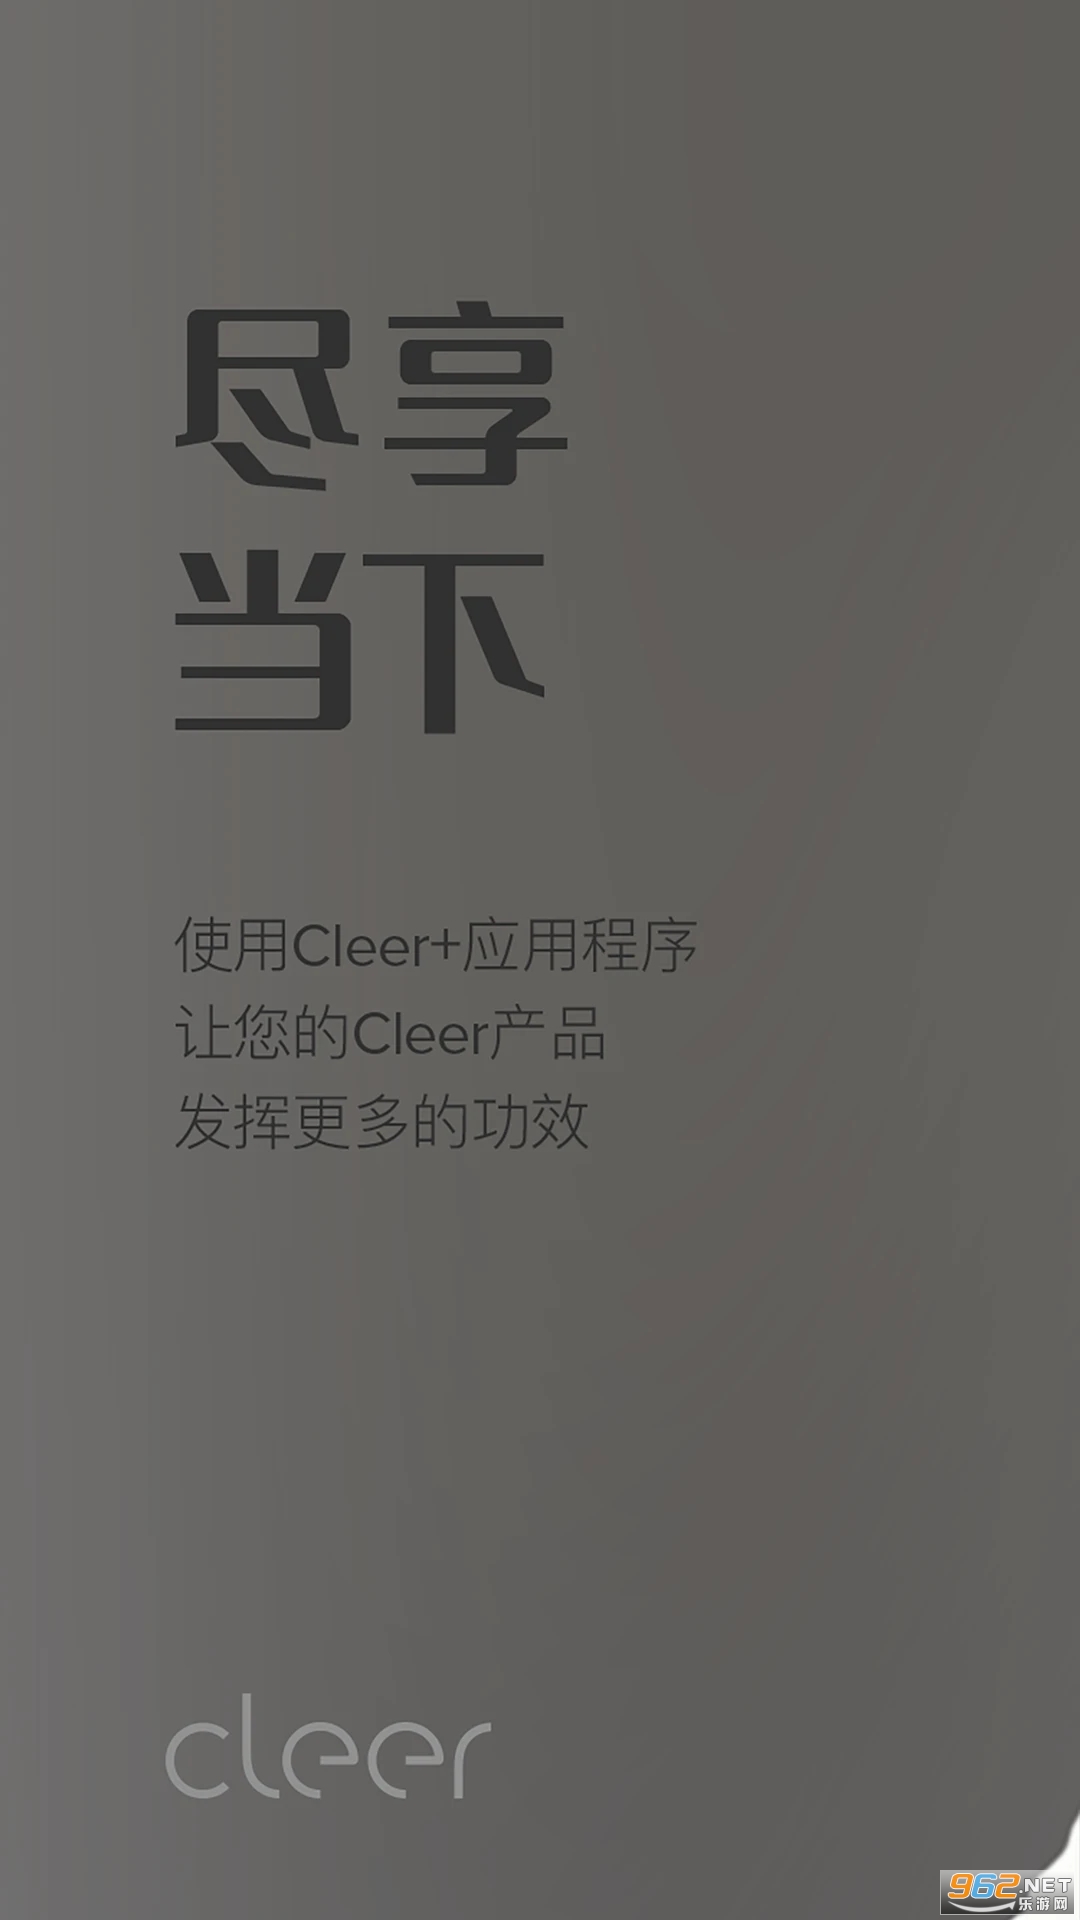 cleer appٷv2.0.1؈D4